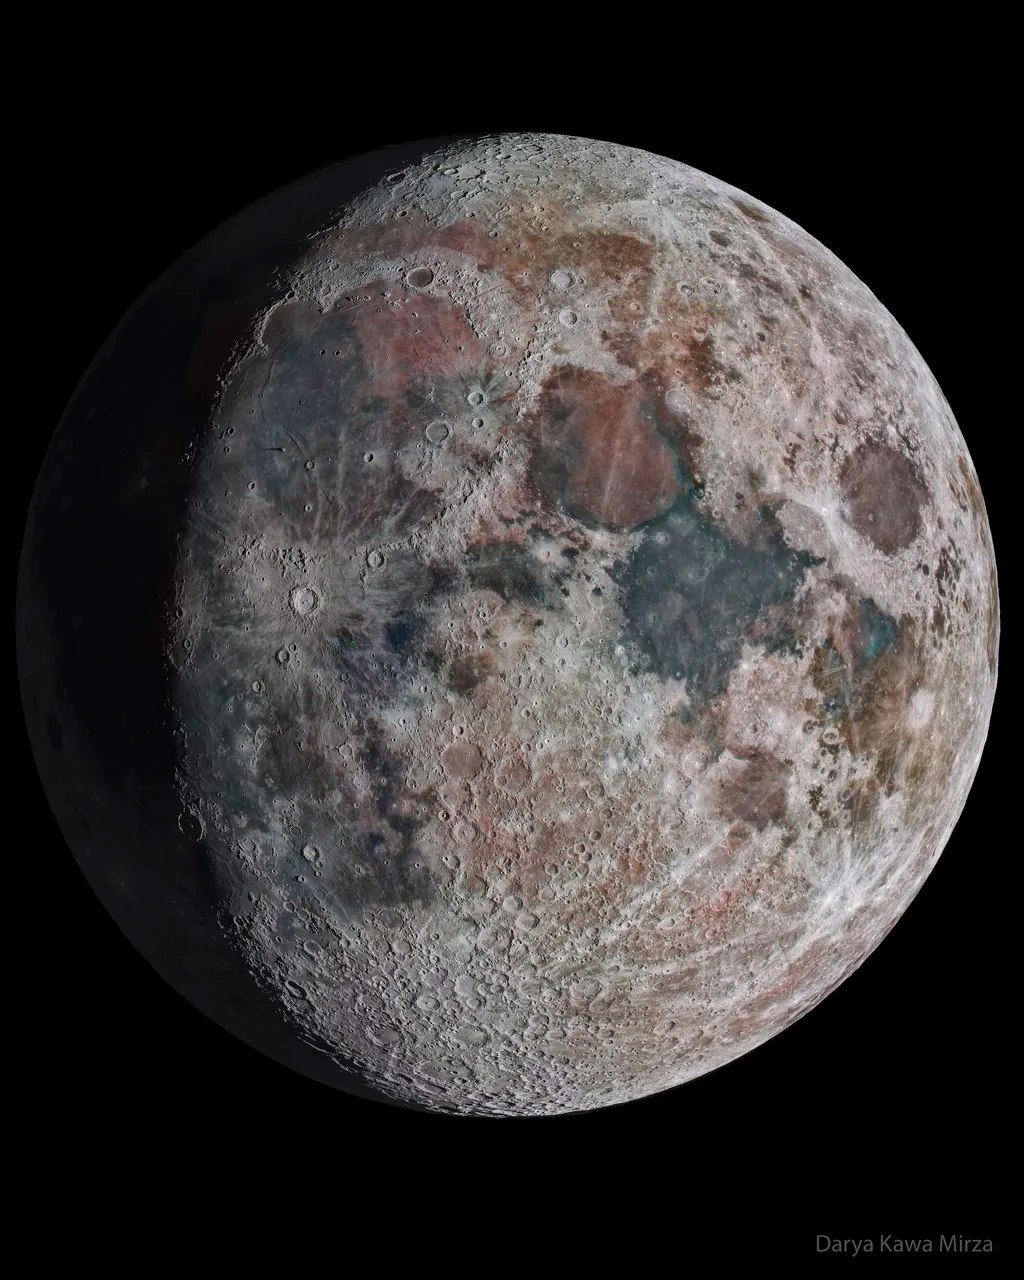 Foto da Lua com cores e crateras extremamente definidas graças à combinação de várias fotos (Imagem: Reprodução/Darya Kawa Mirza)